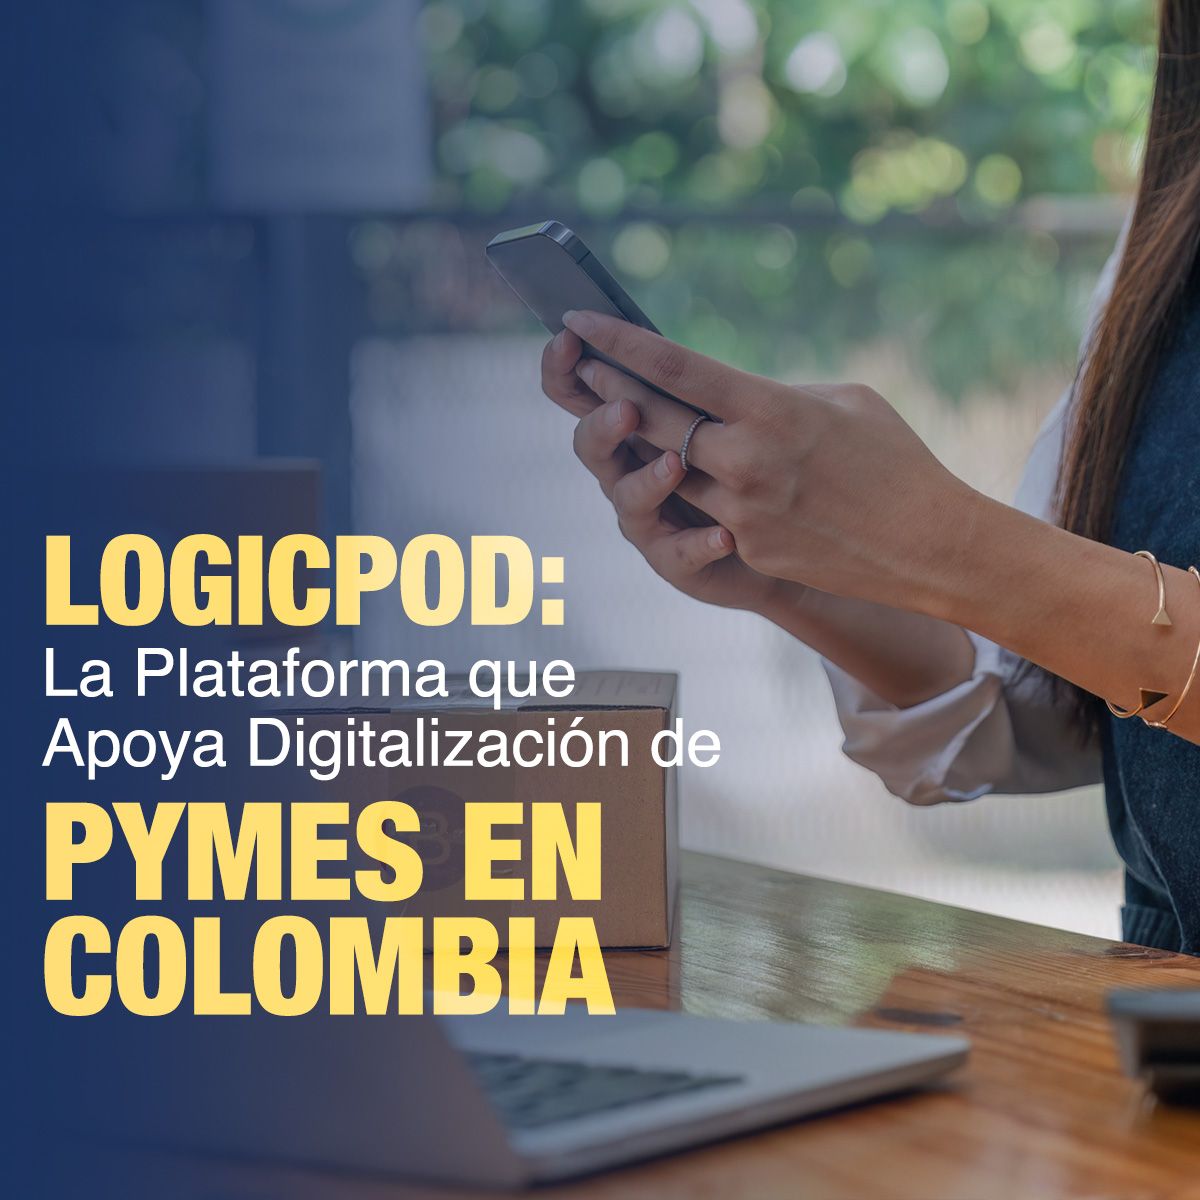 LogicPod: La Plataforma que Apoya Digitalización de Pymes en Colombia